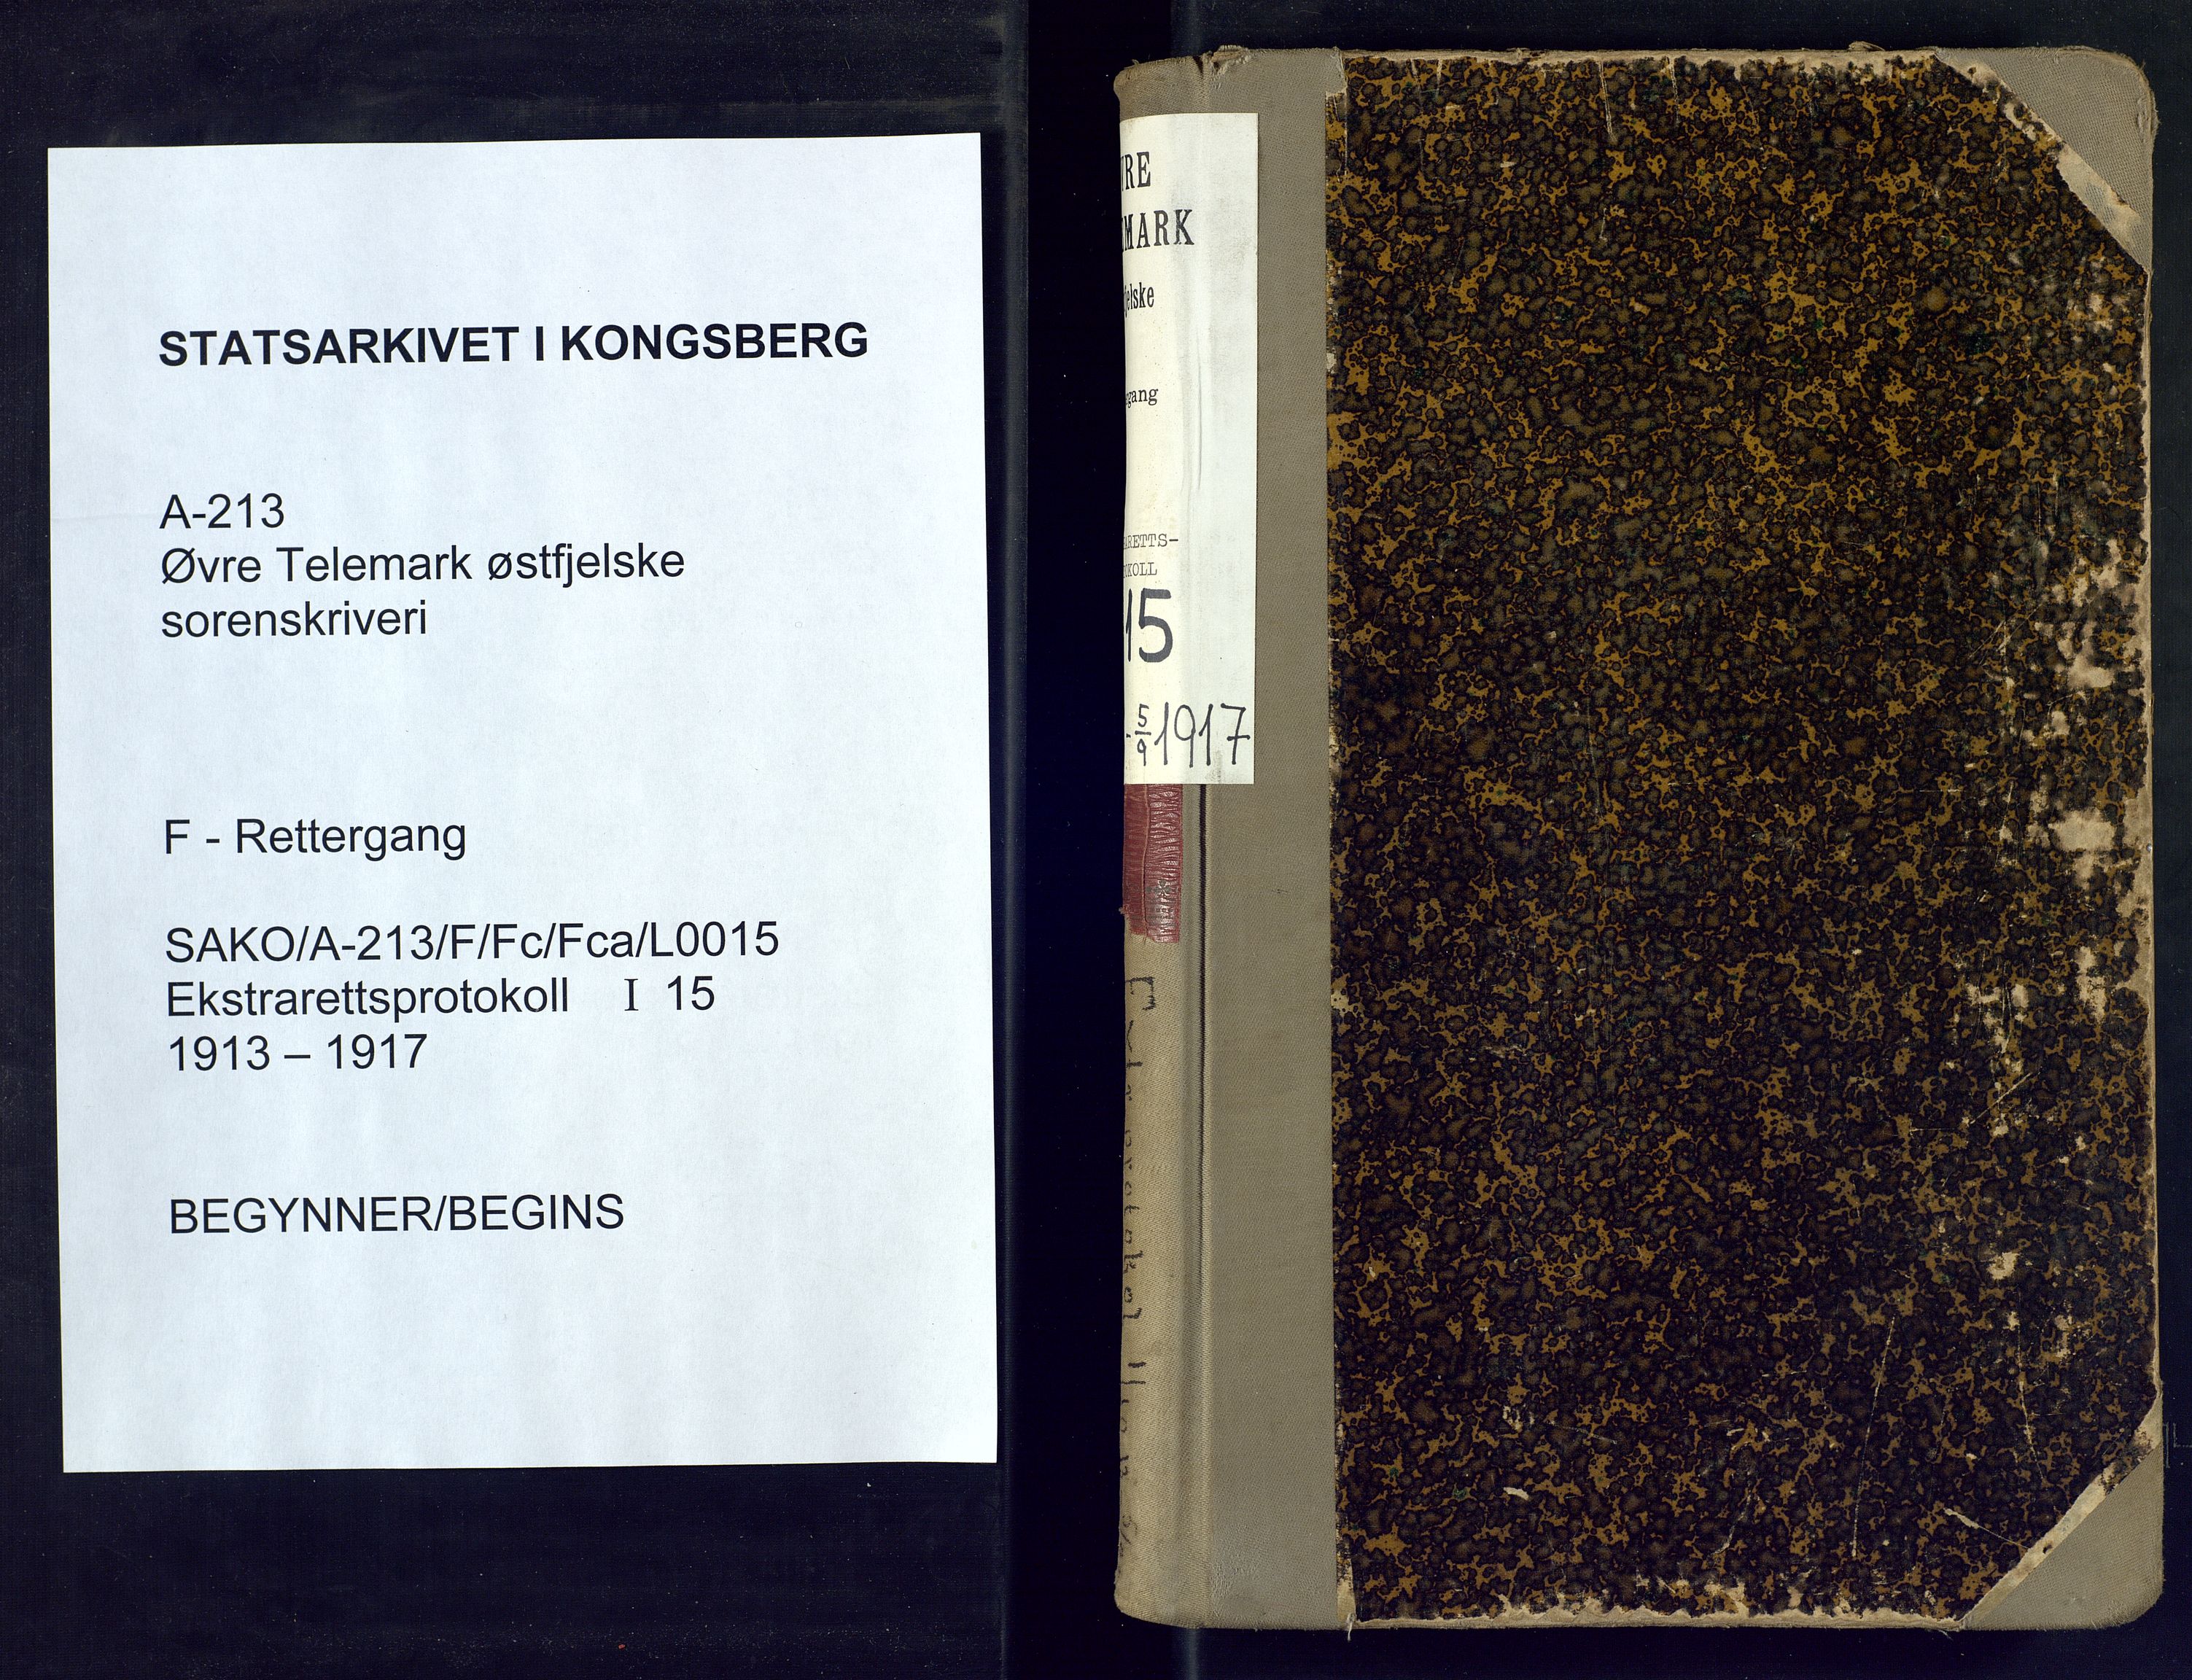 Øvre Telemark østfjelske sorenskriveri, SAKO/A-213/F/Fc/Fca/L0015: Ekstrarettsprotokoll, sivile saker, 1913-1917